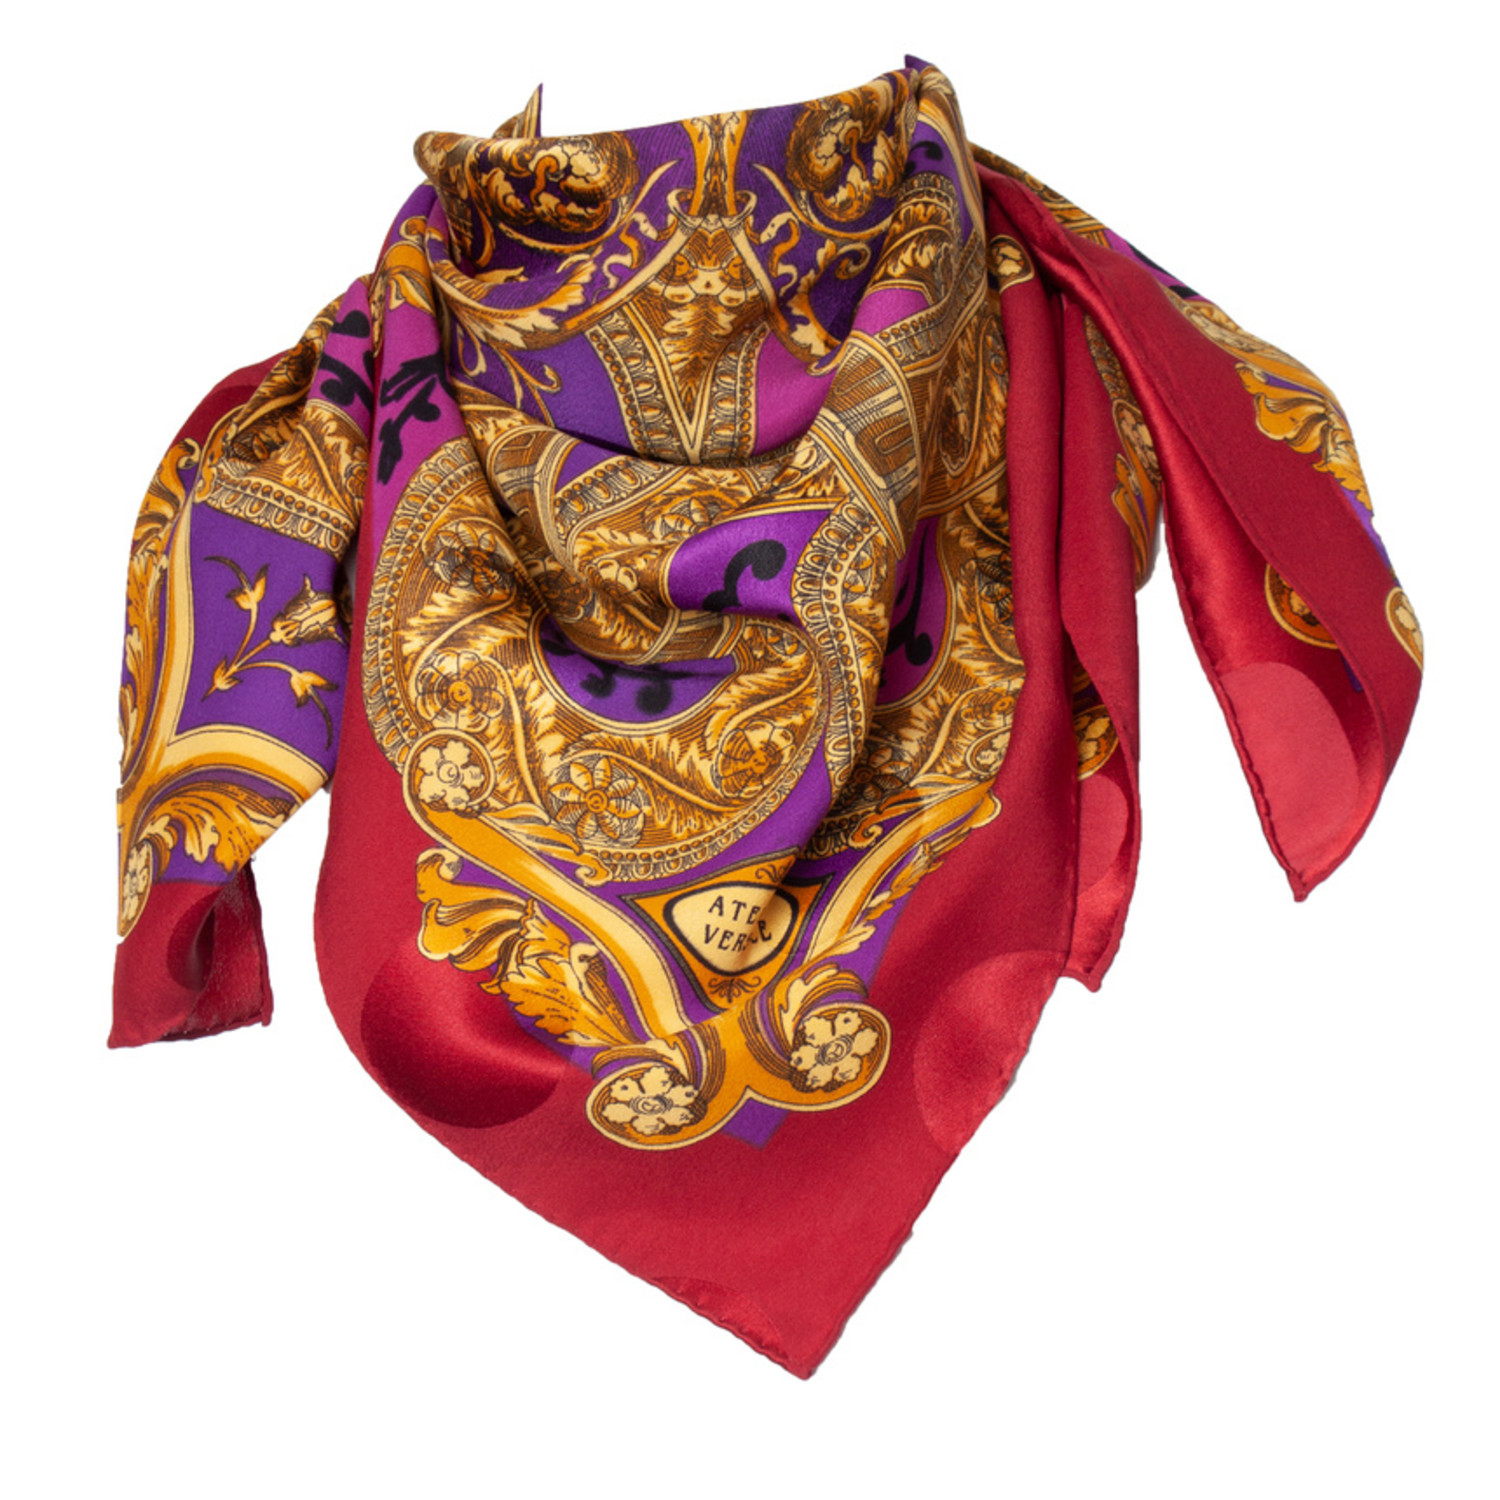 Atelier Versace, Multicolored Barocco printed scarf - Unique Designer Pieces